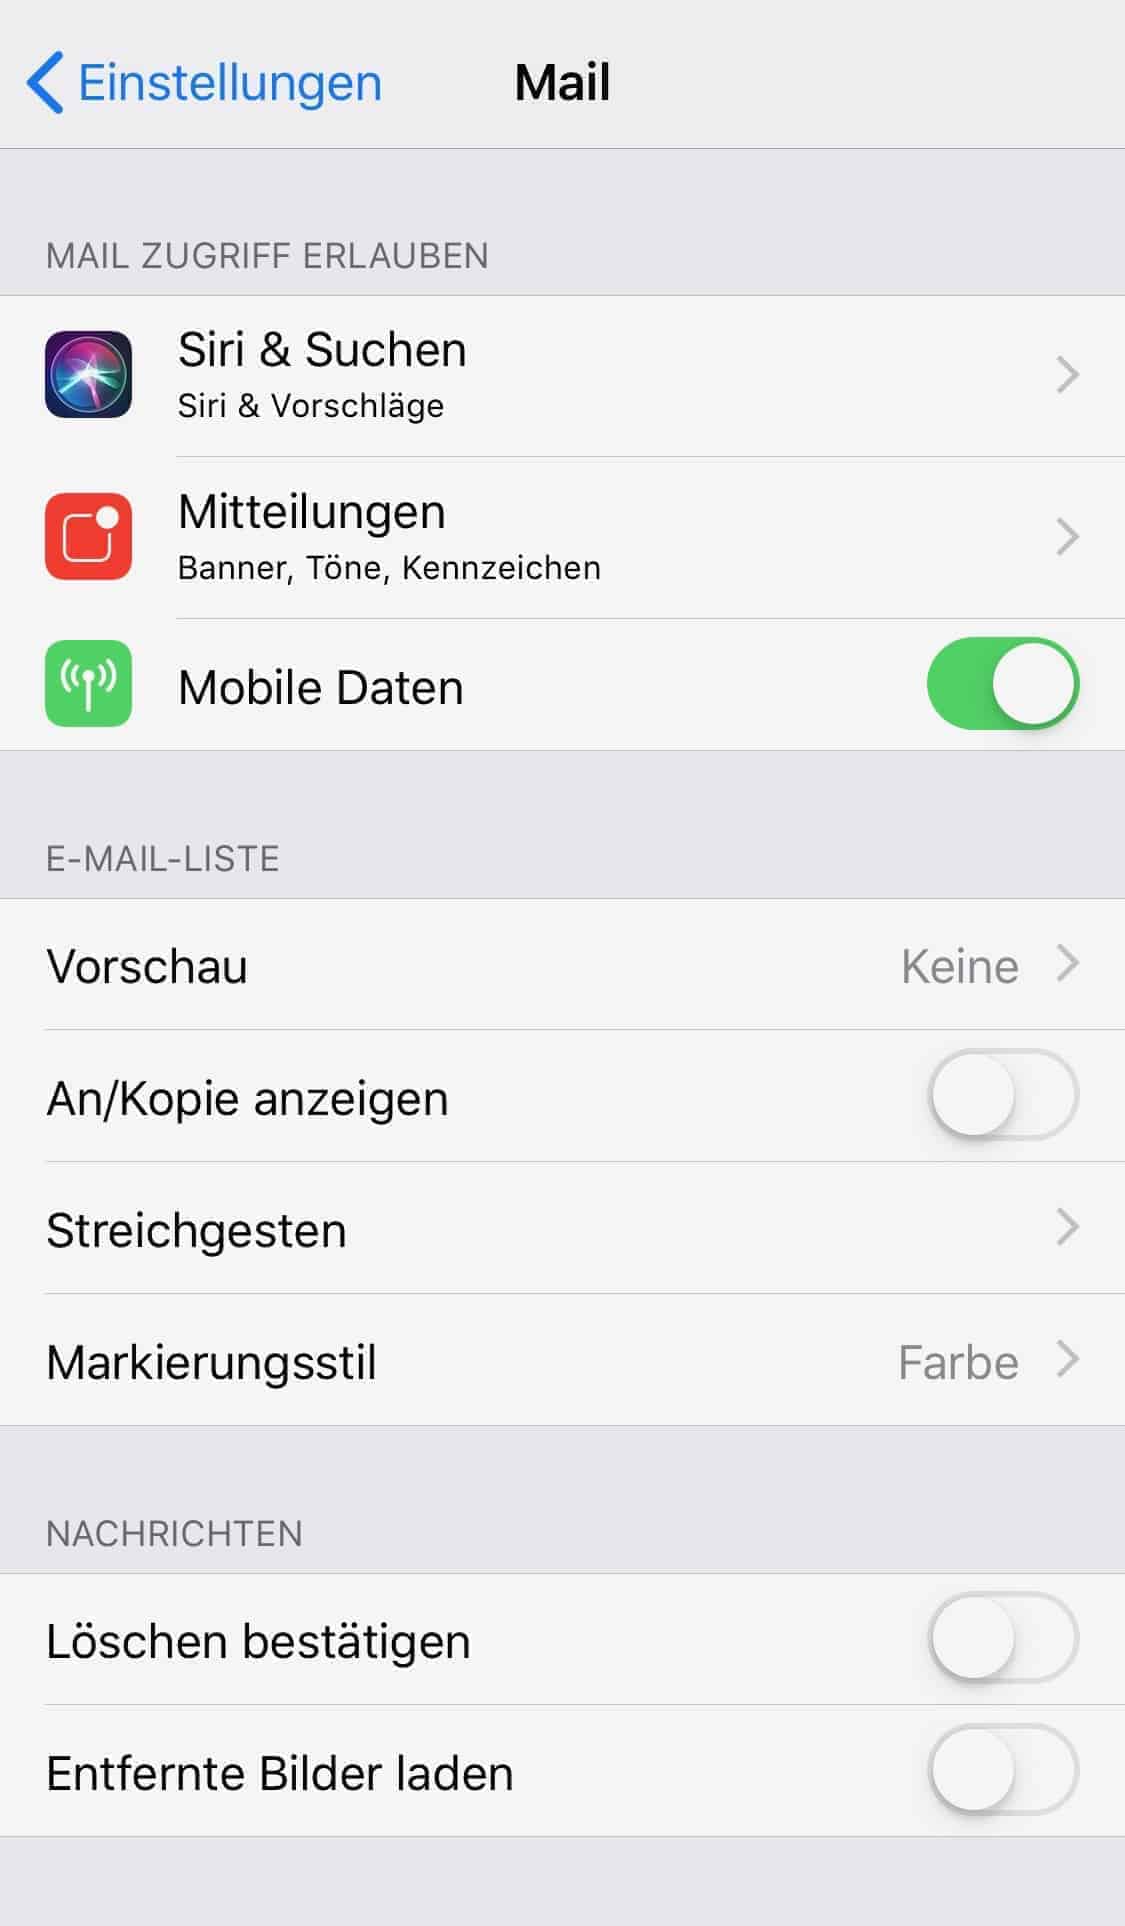 Roaming_iOS_Mail_Mobile_Daten_und_Entfernte_Bilder_laden